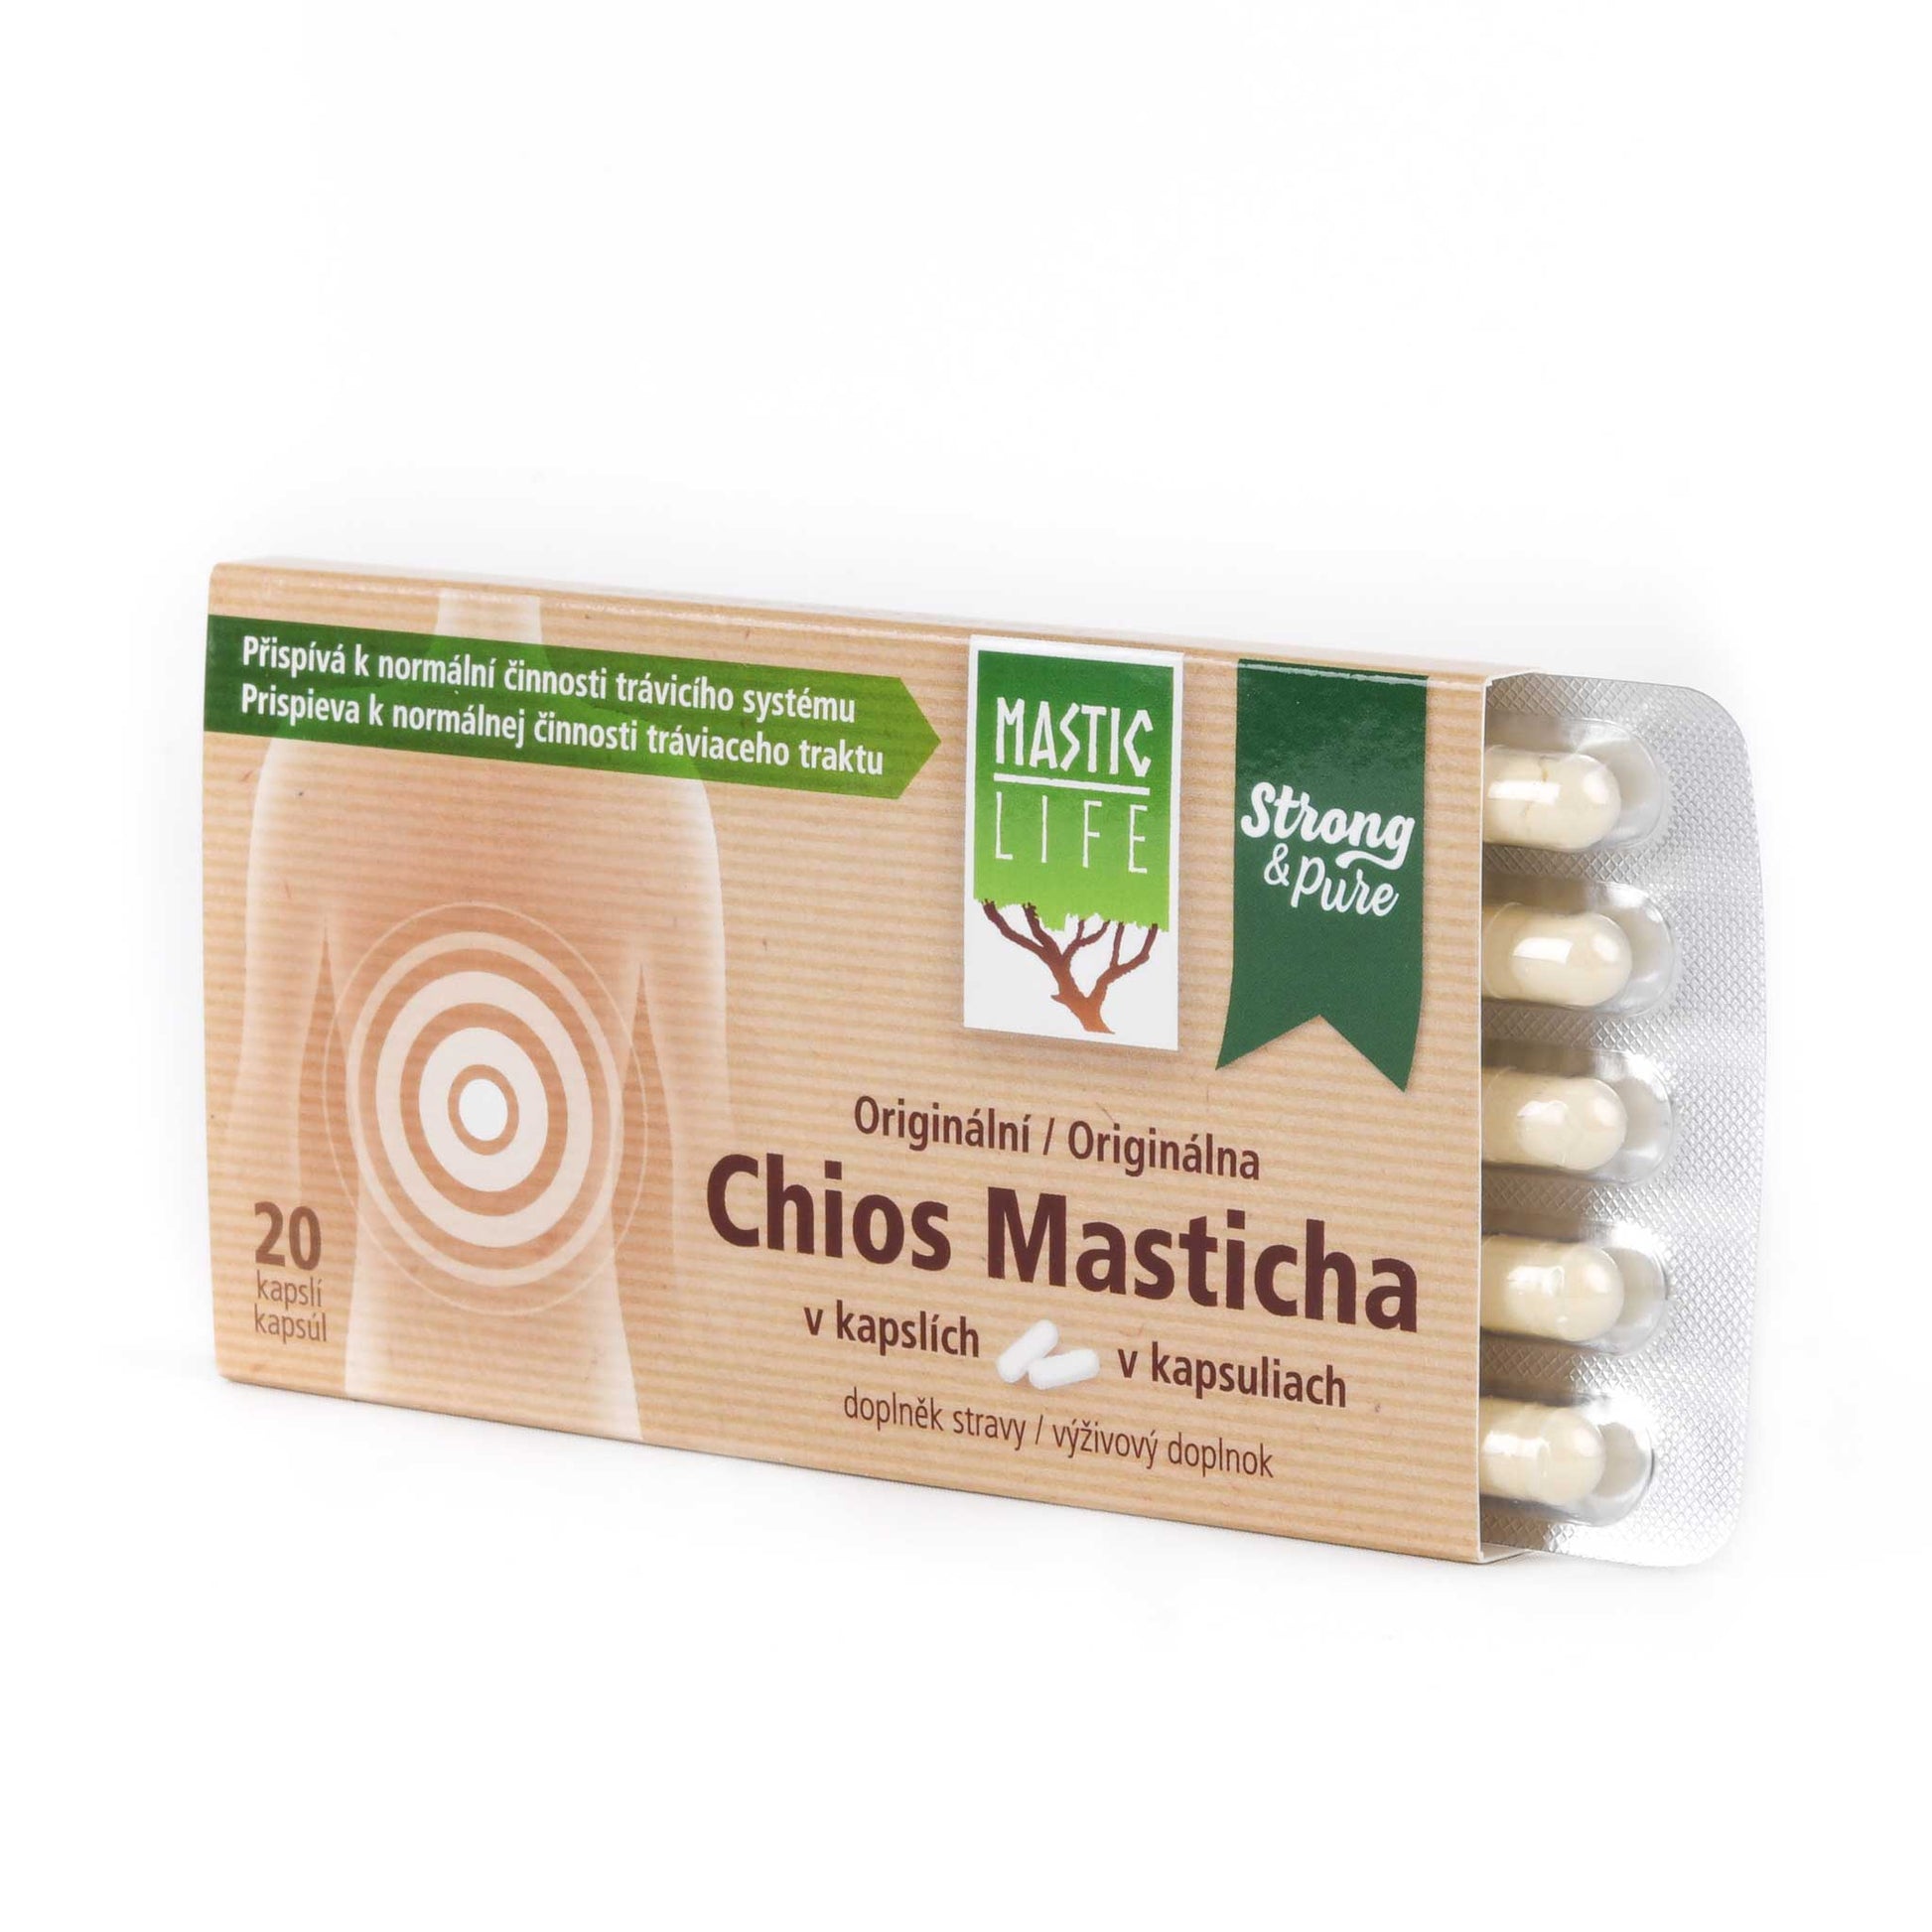 Masticha original, čistá a účinná - Masticlife Strong&Pure Mini Pack